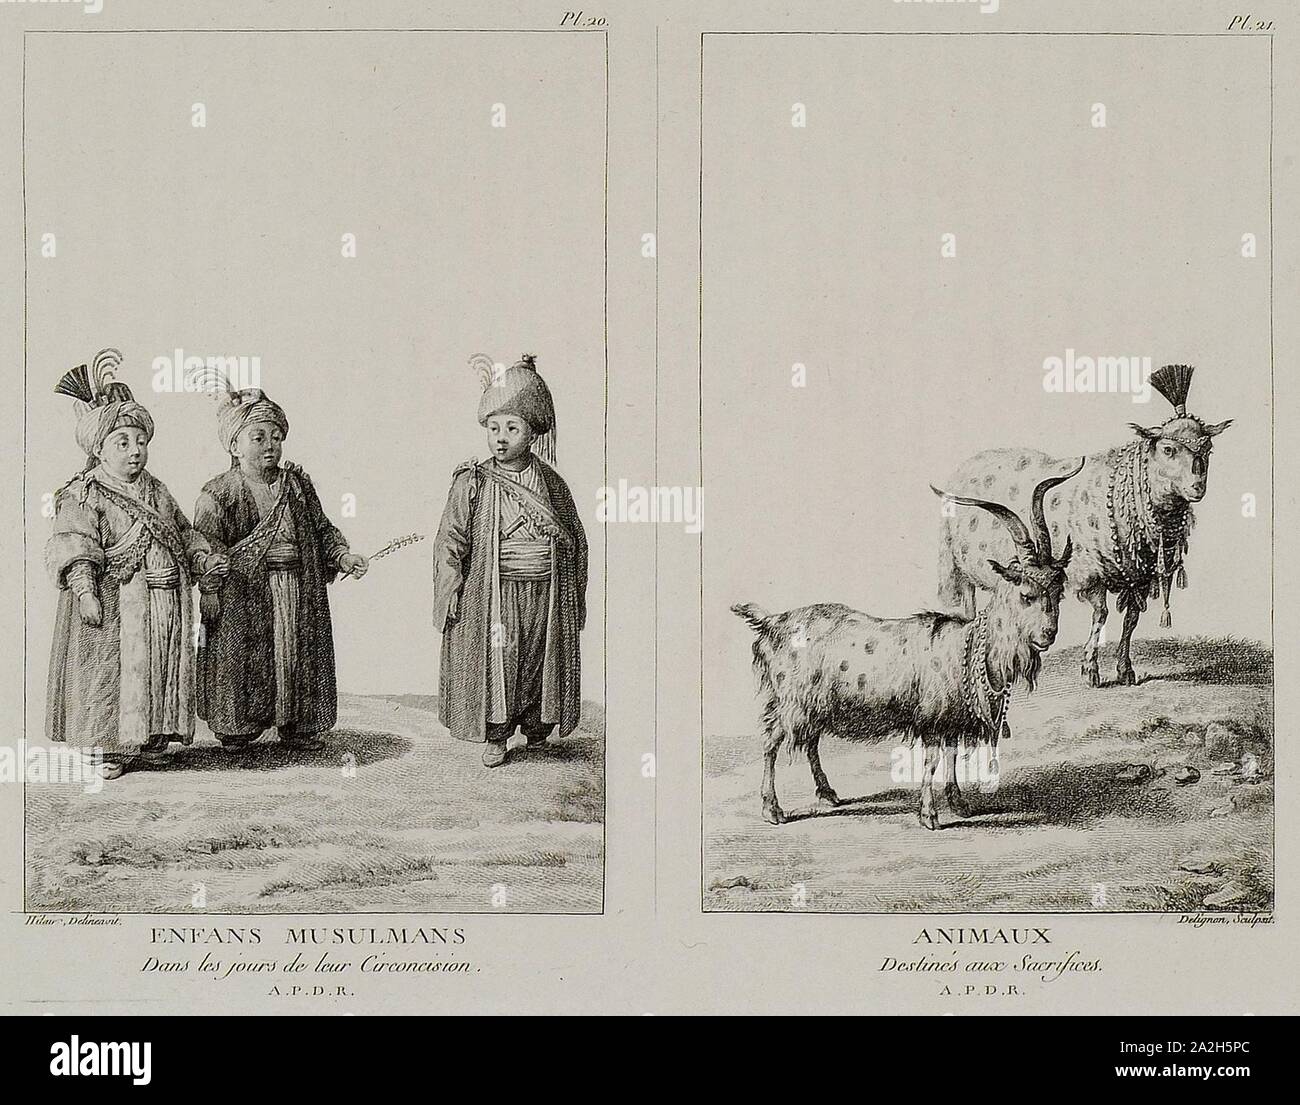 Enfans Musulmans dans les Jours de Leur circoncision Animaux destinés aux Opfer - Mouradgea D'ohsson - 1787. Stockfoto